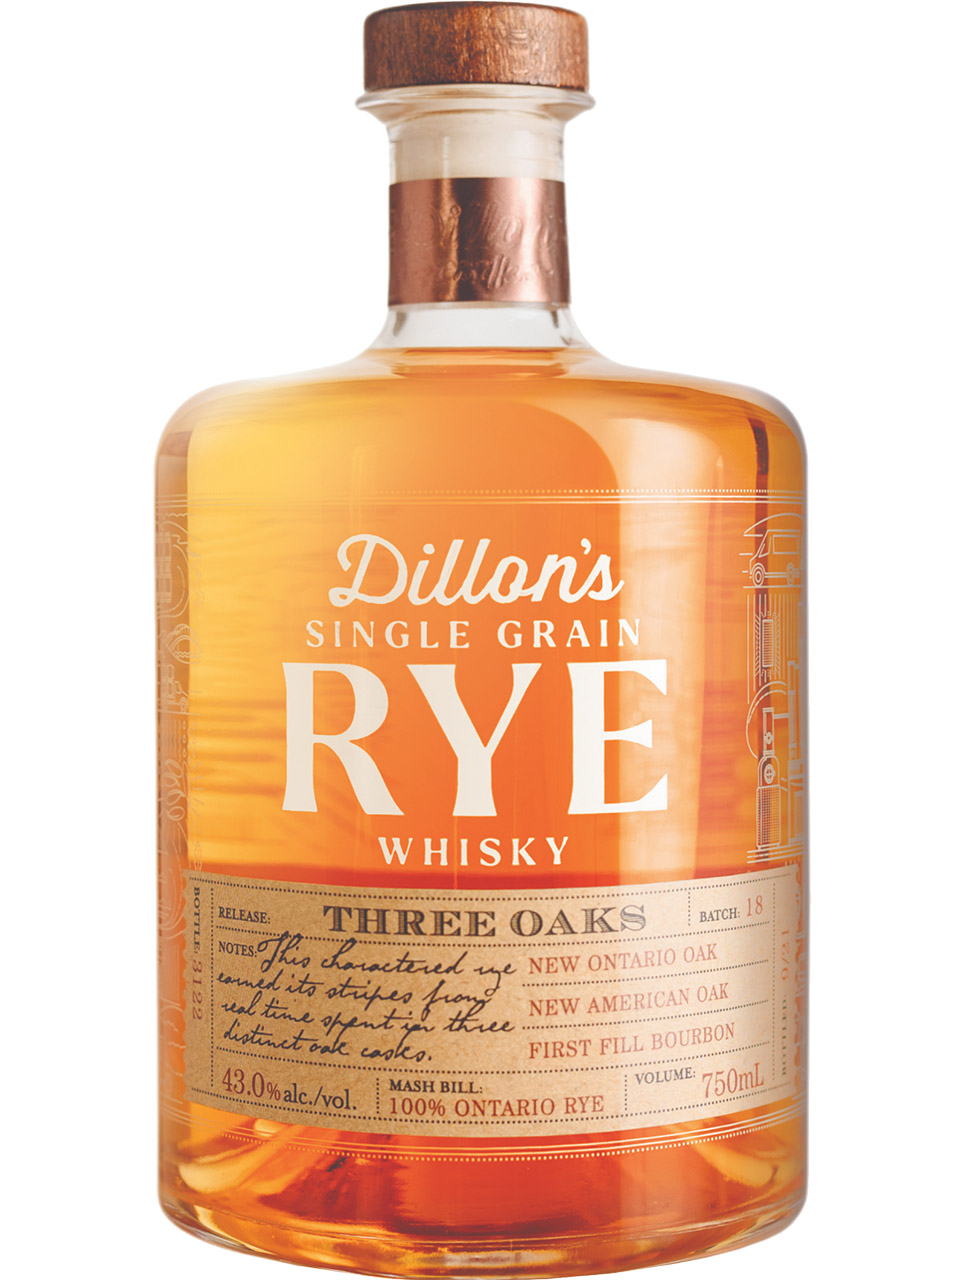 Dillon's Rye Whisky